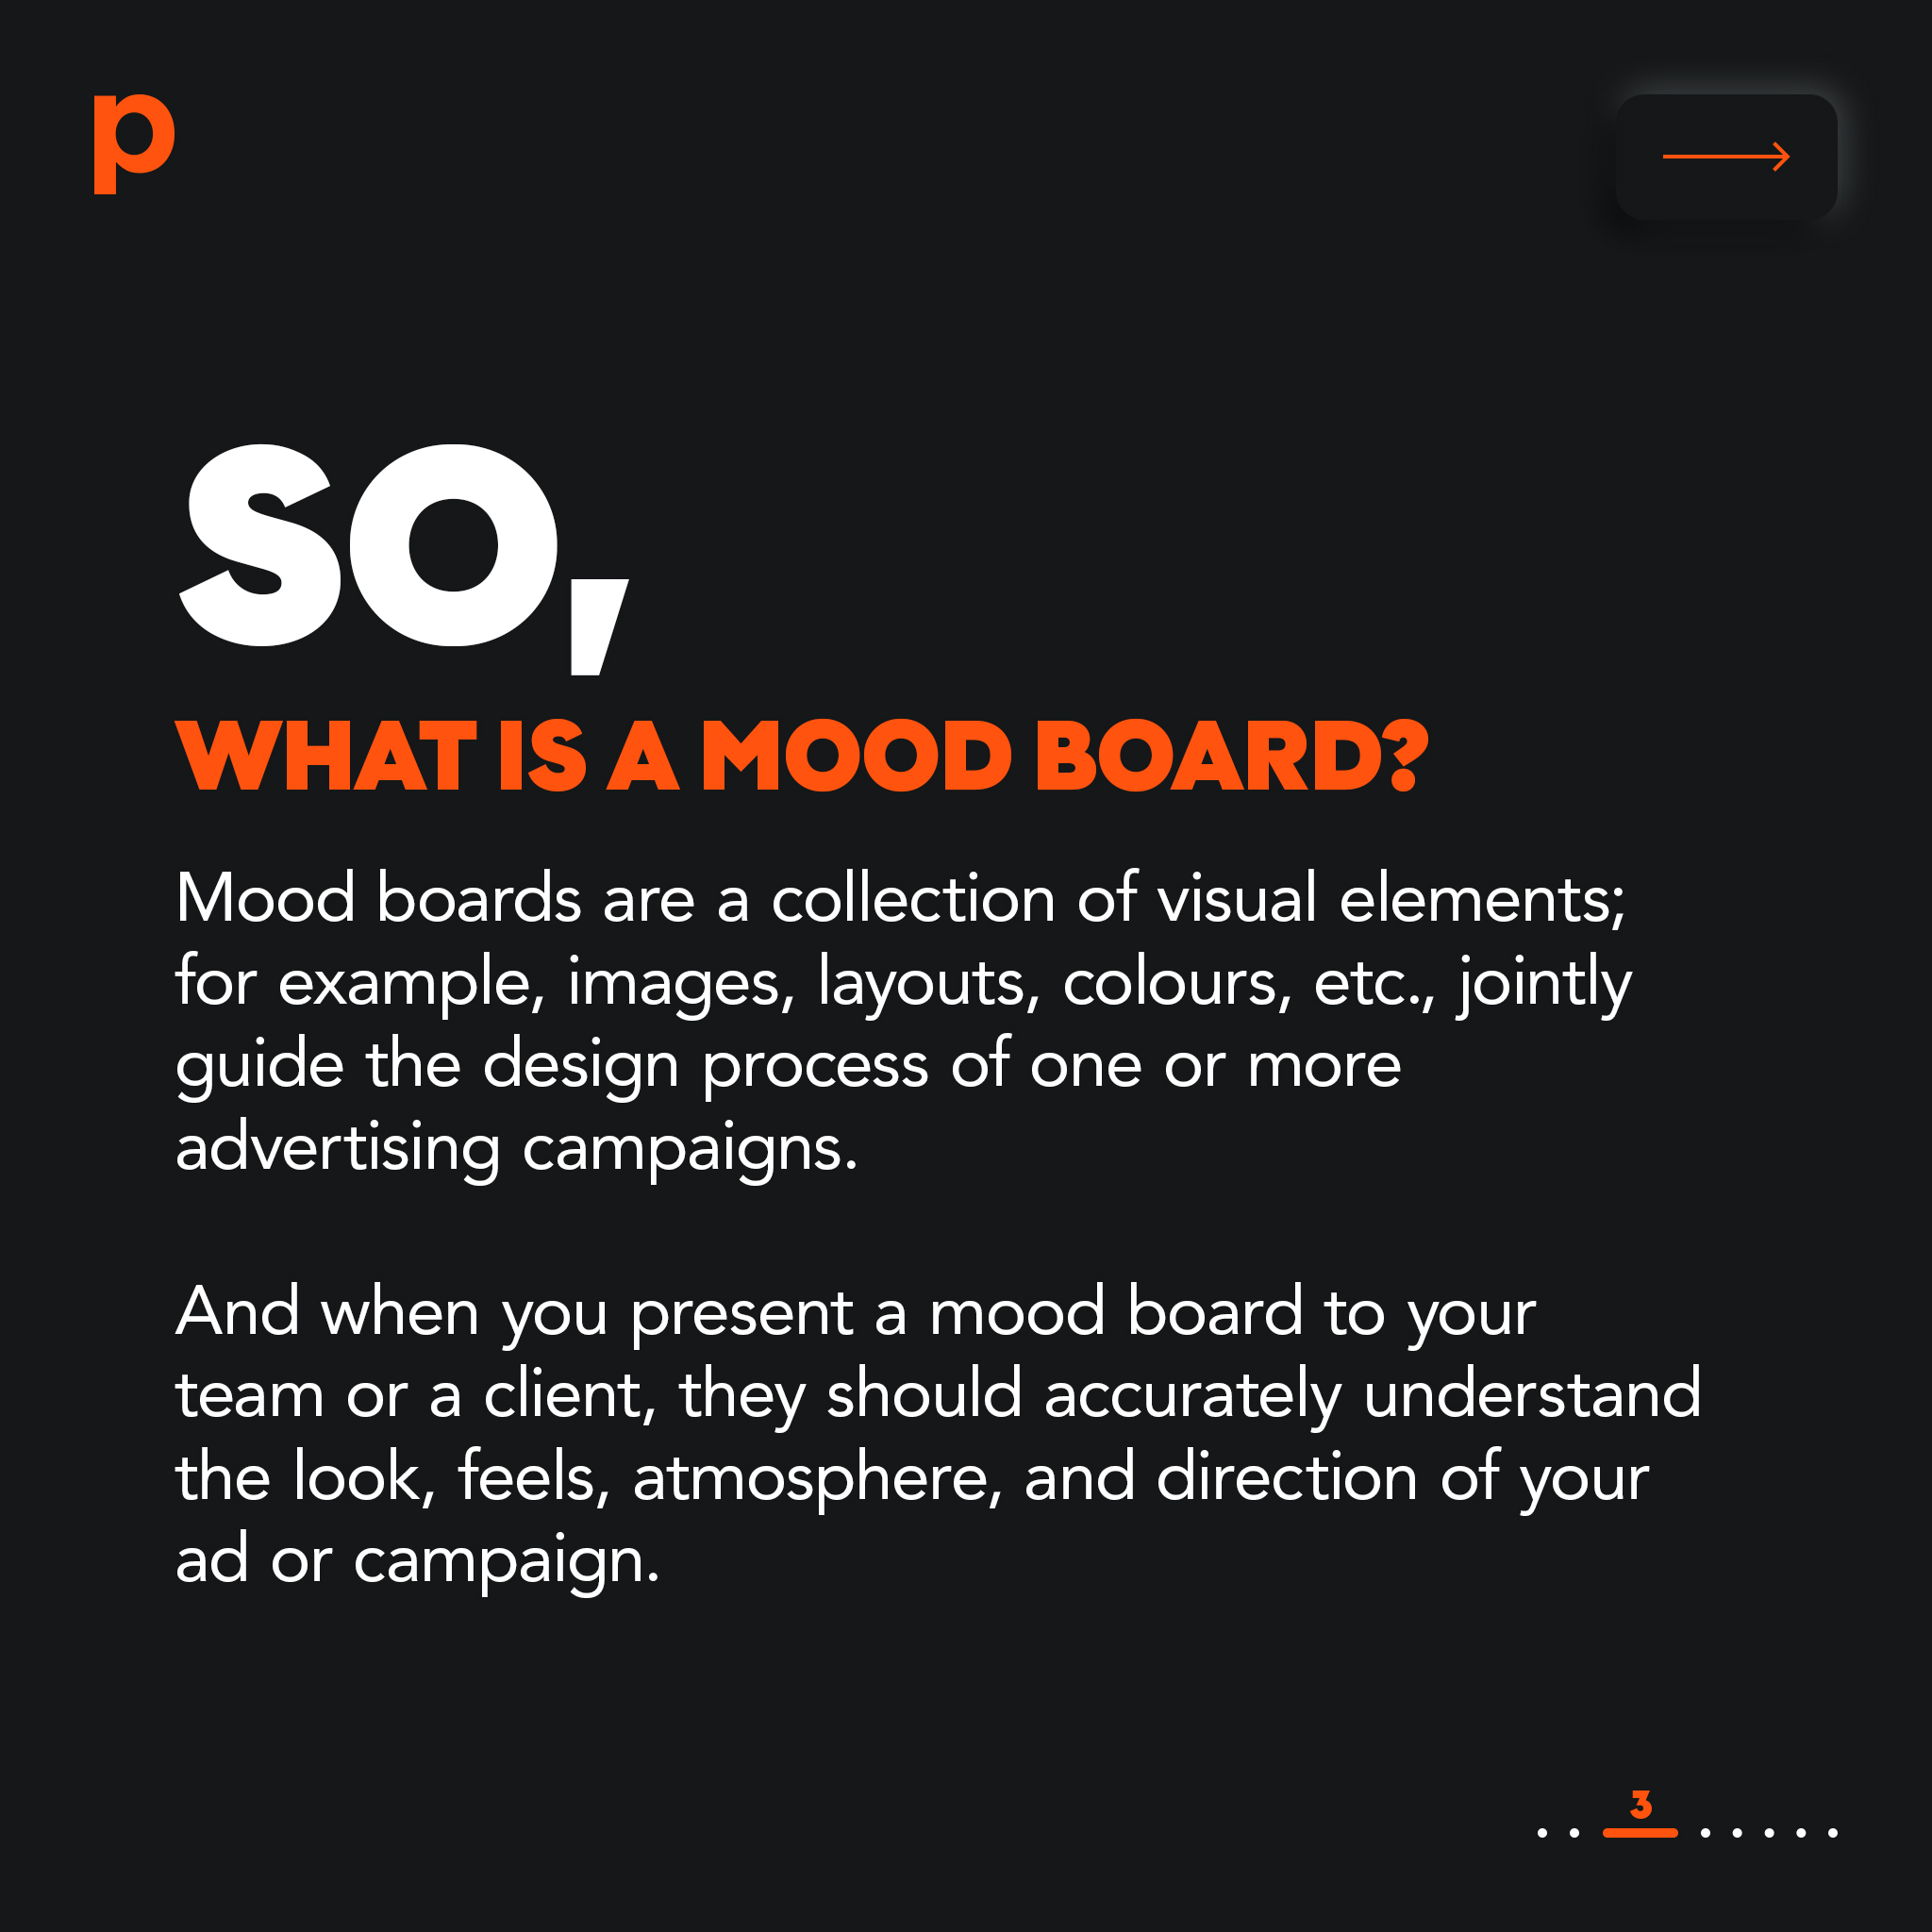 ทำความรู้จัก Mood Board หนึ่งในเครื่องมือที่ดีที่สุดสำหรับการสร้างสรรค์แคมเปญโฆษณา